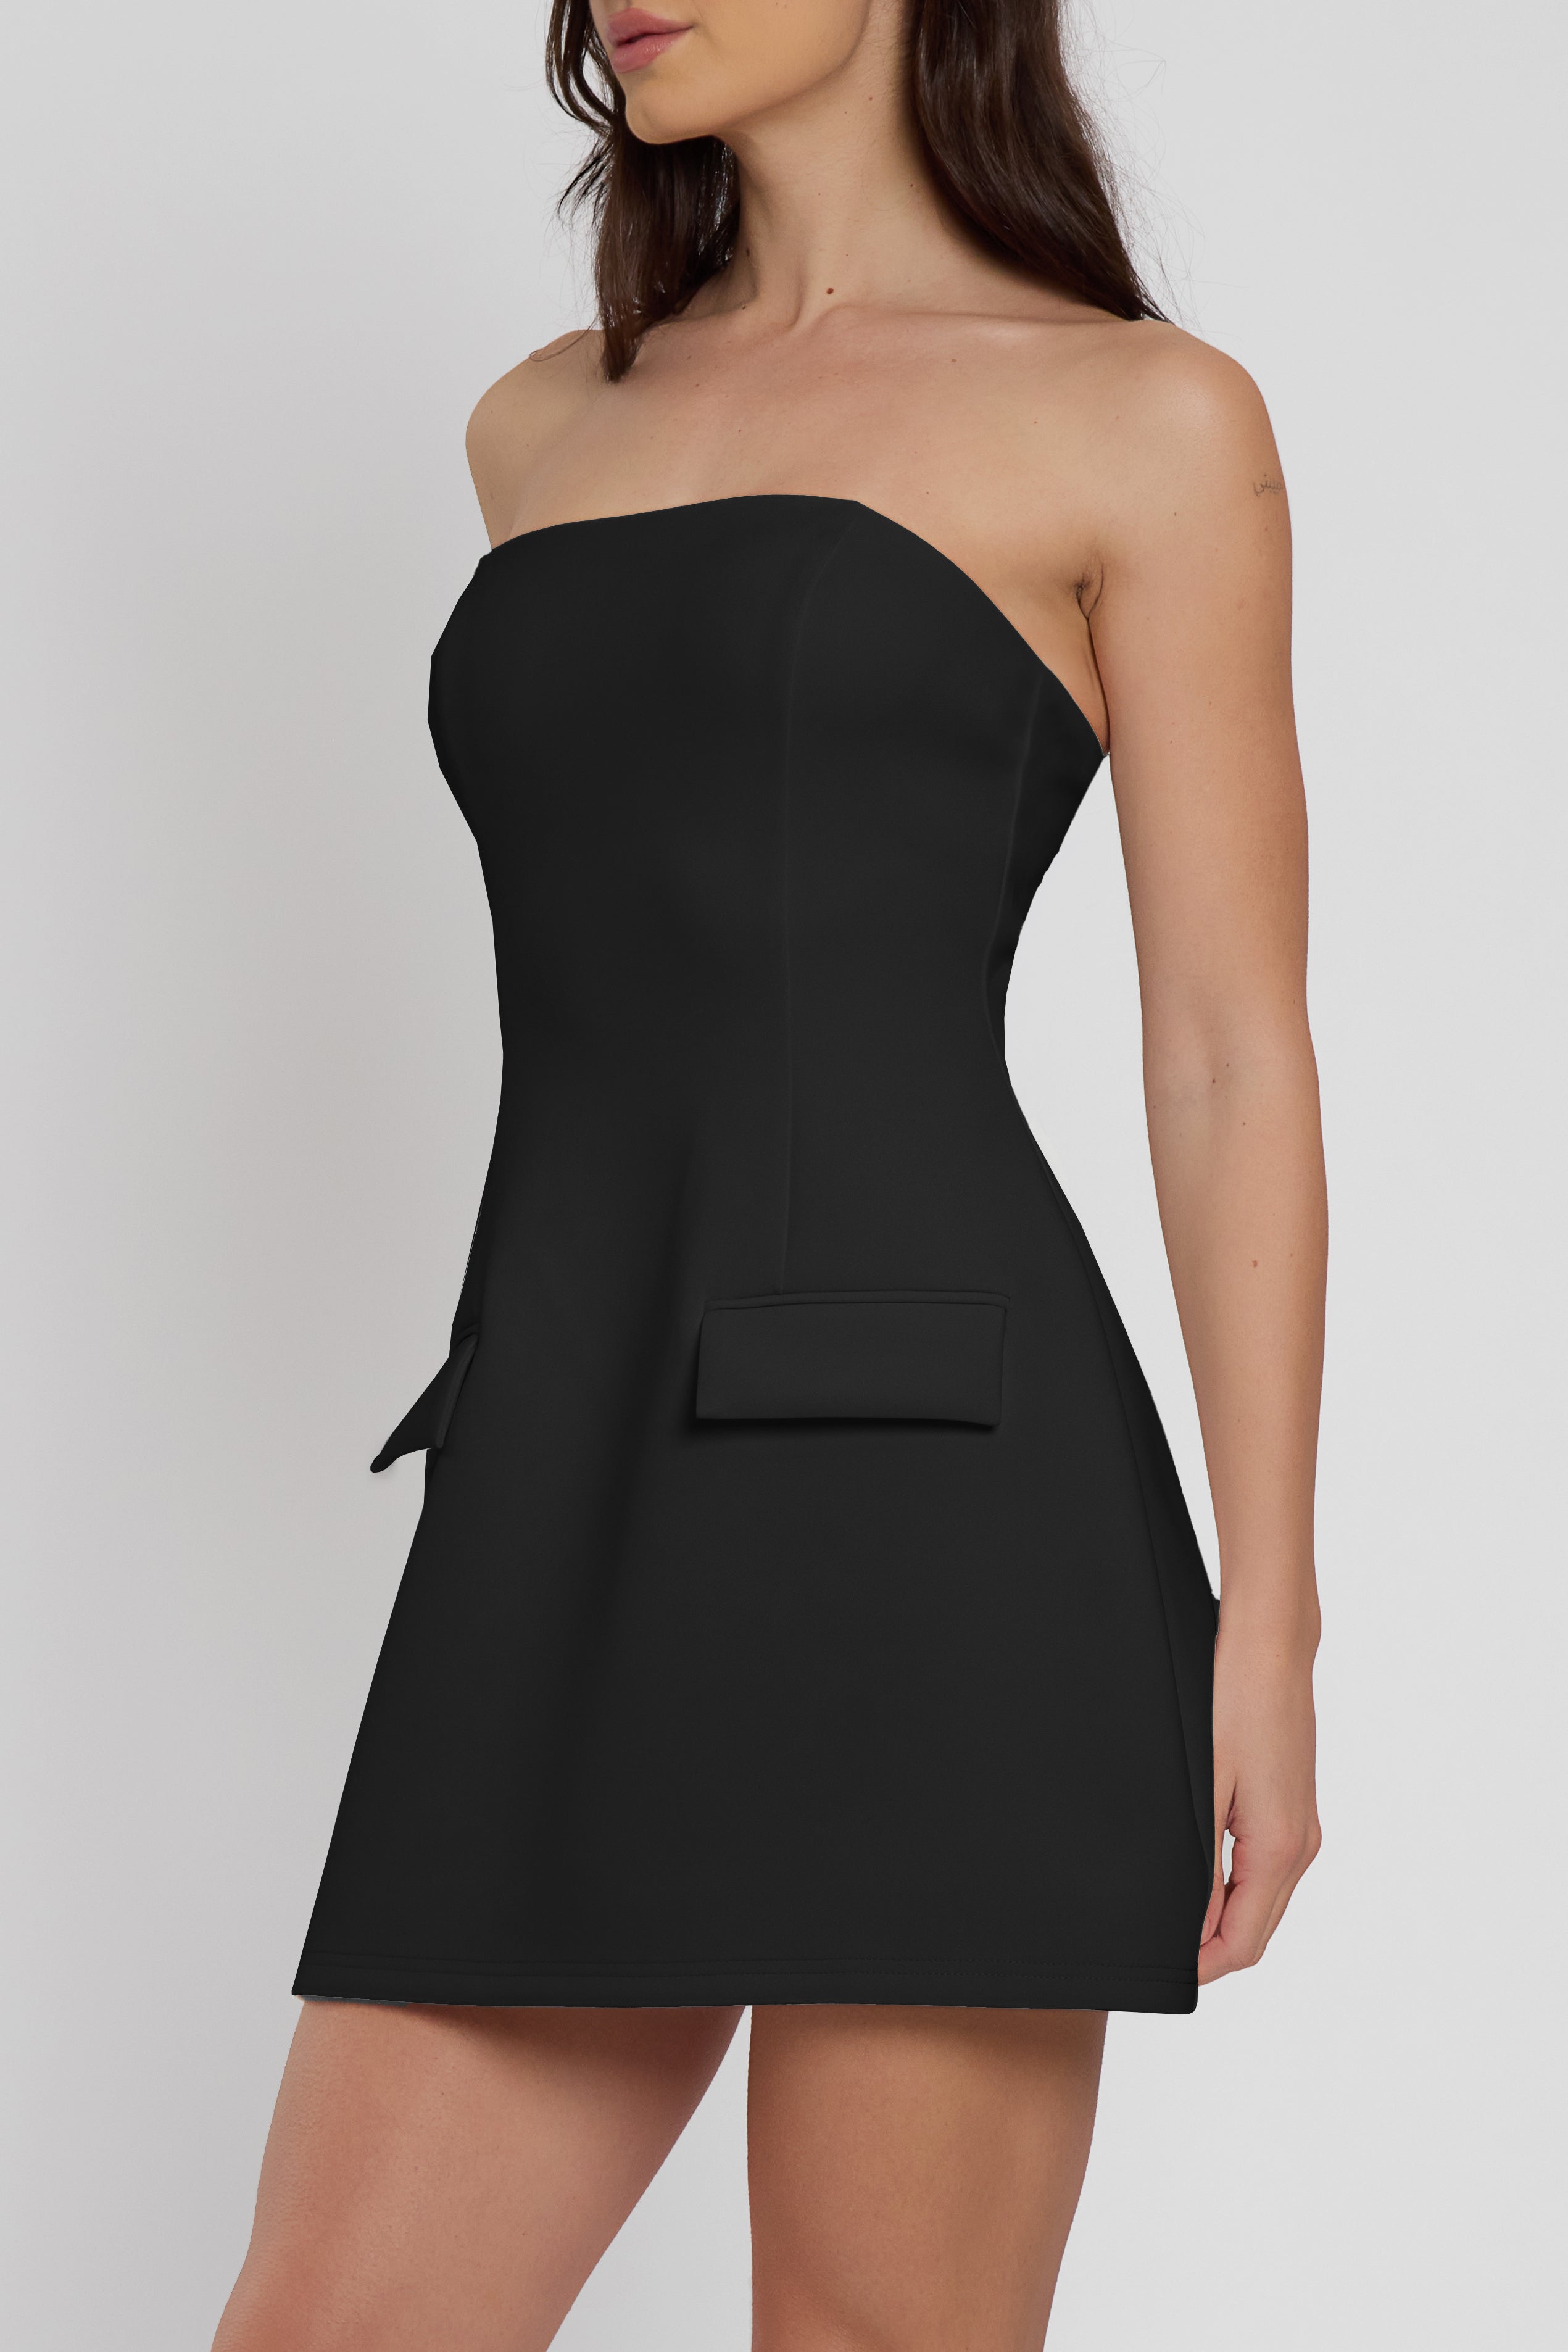 Solene Strapless Pocket Mini Dress - Black